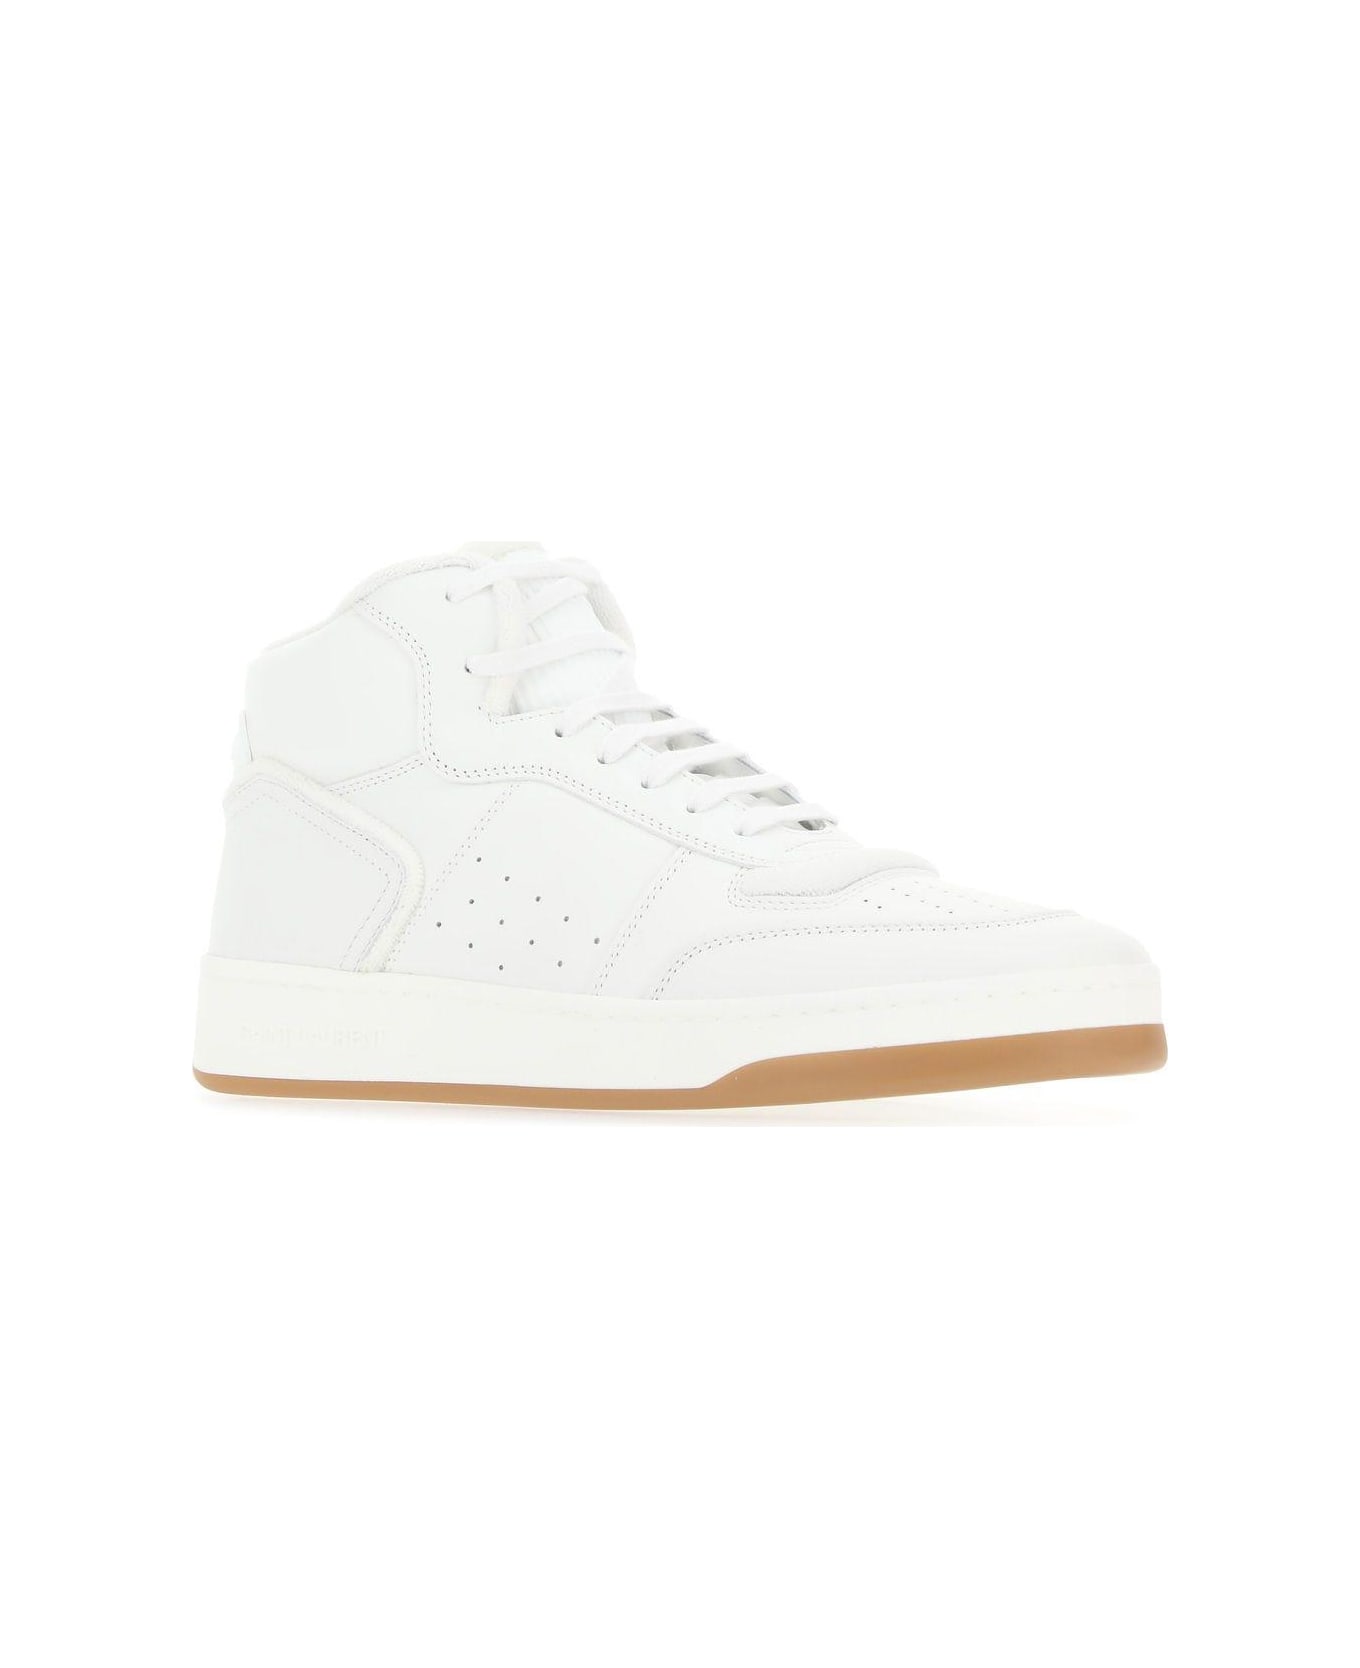 Saint Laurent Sl/80 Sneakers - White スニーカー